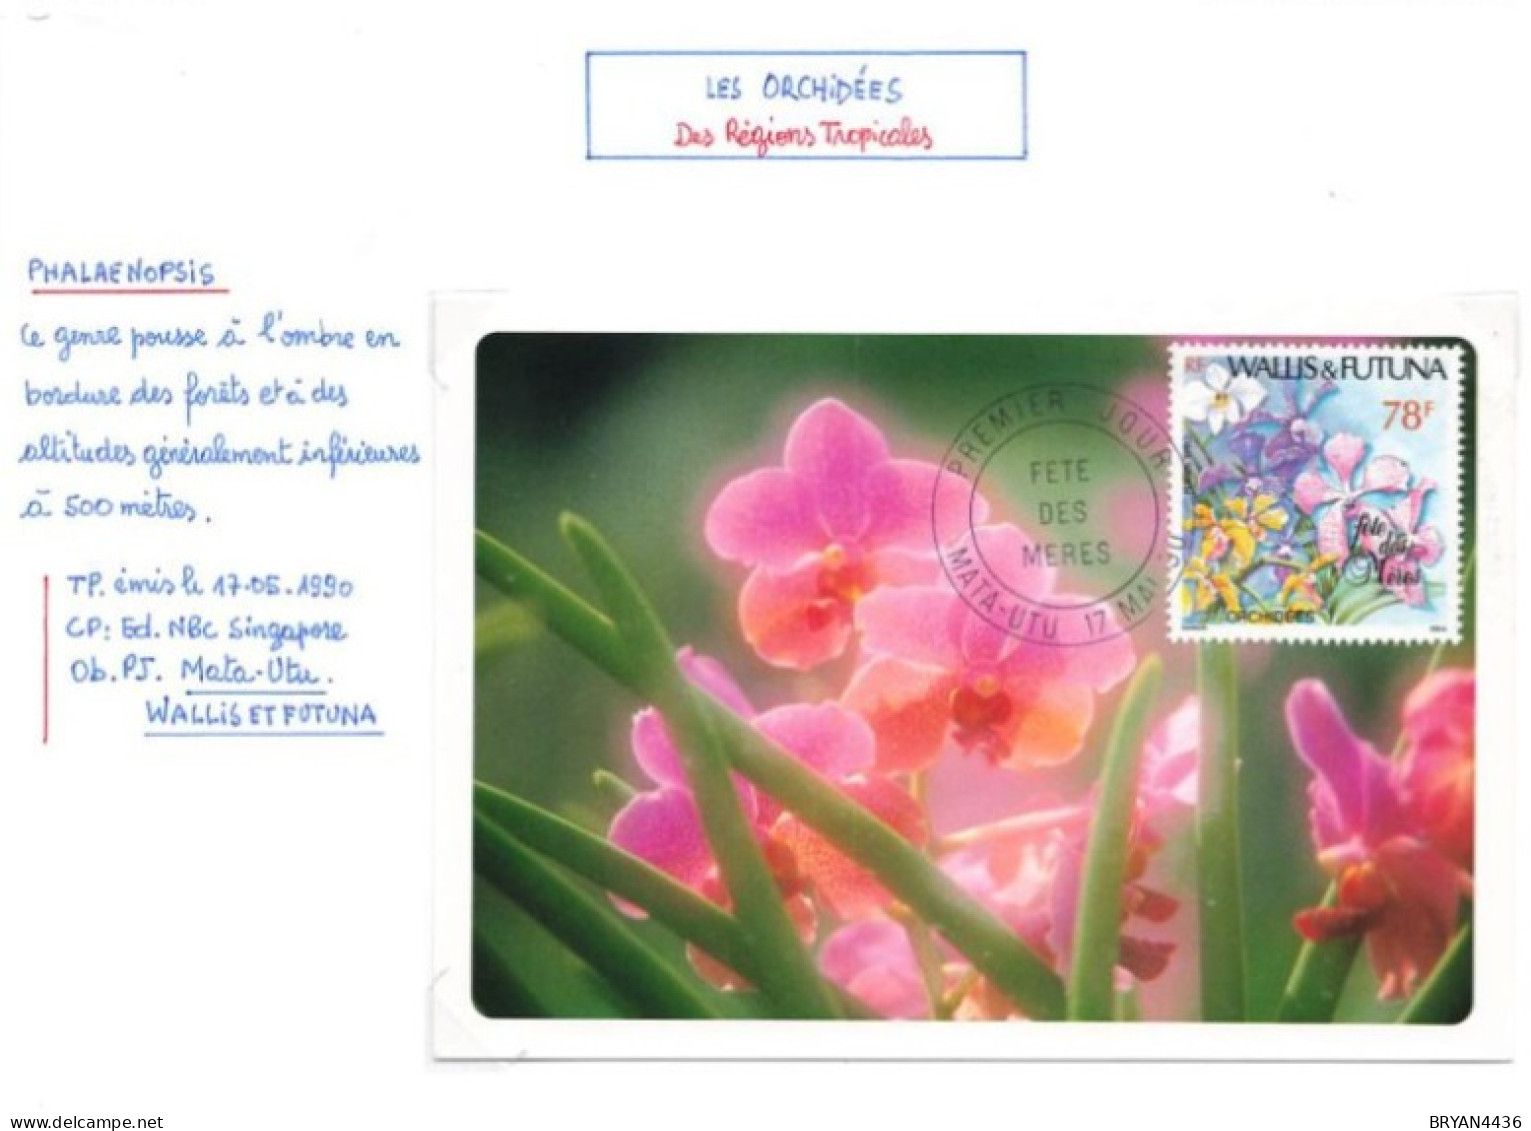 WALLIS & FUTUNA - Les ORCHIDES - CARTE MAXIMUM - Thème; FLEURS - MATA-HUTU - 1990 - TRES BON ETAT - Cartes-maximum